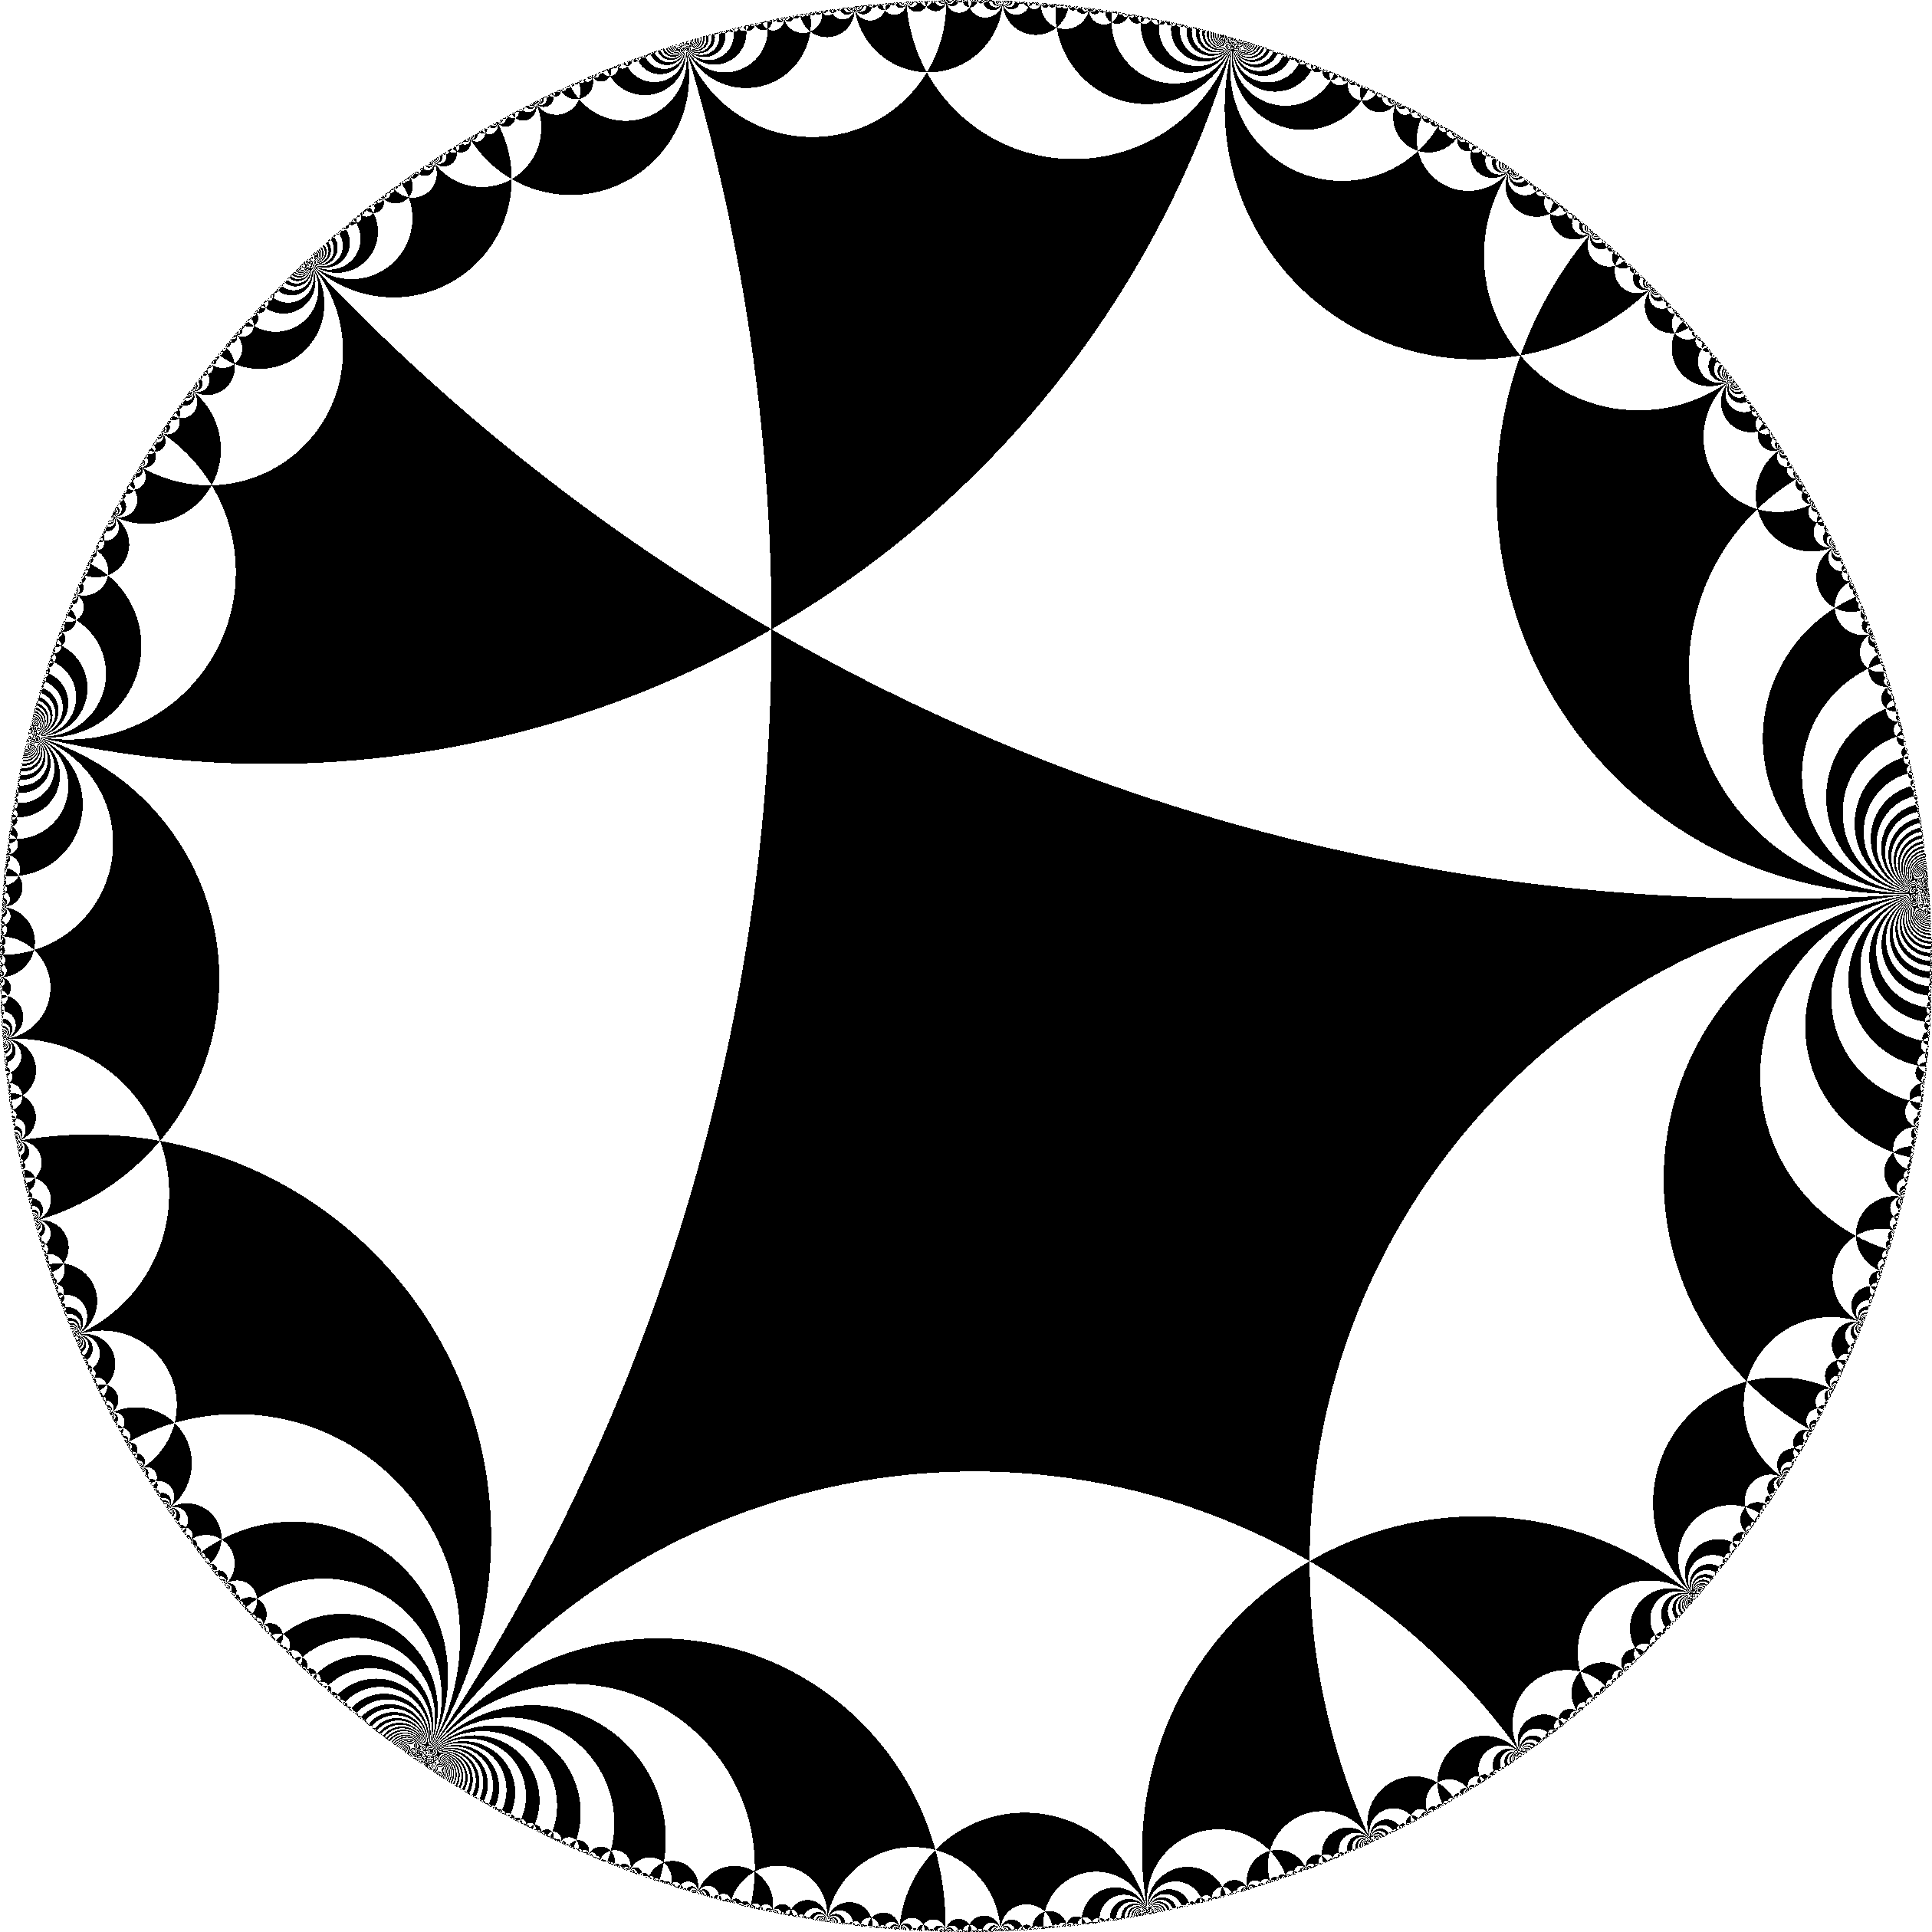 Checkerboard Clipart Camera Calibration - Black And White Optical Illusions Swirl (2520x2520)